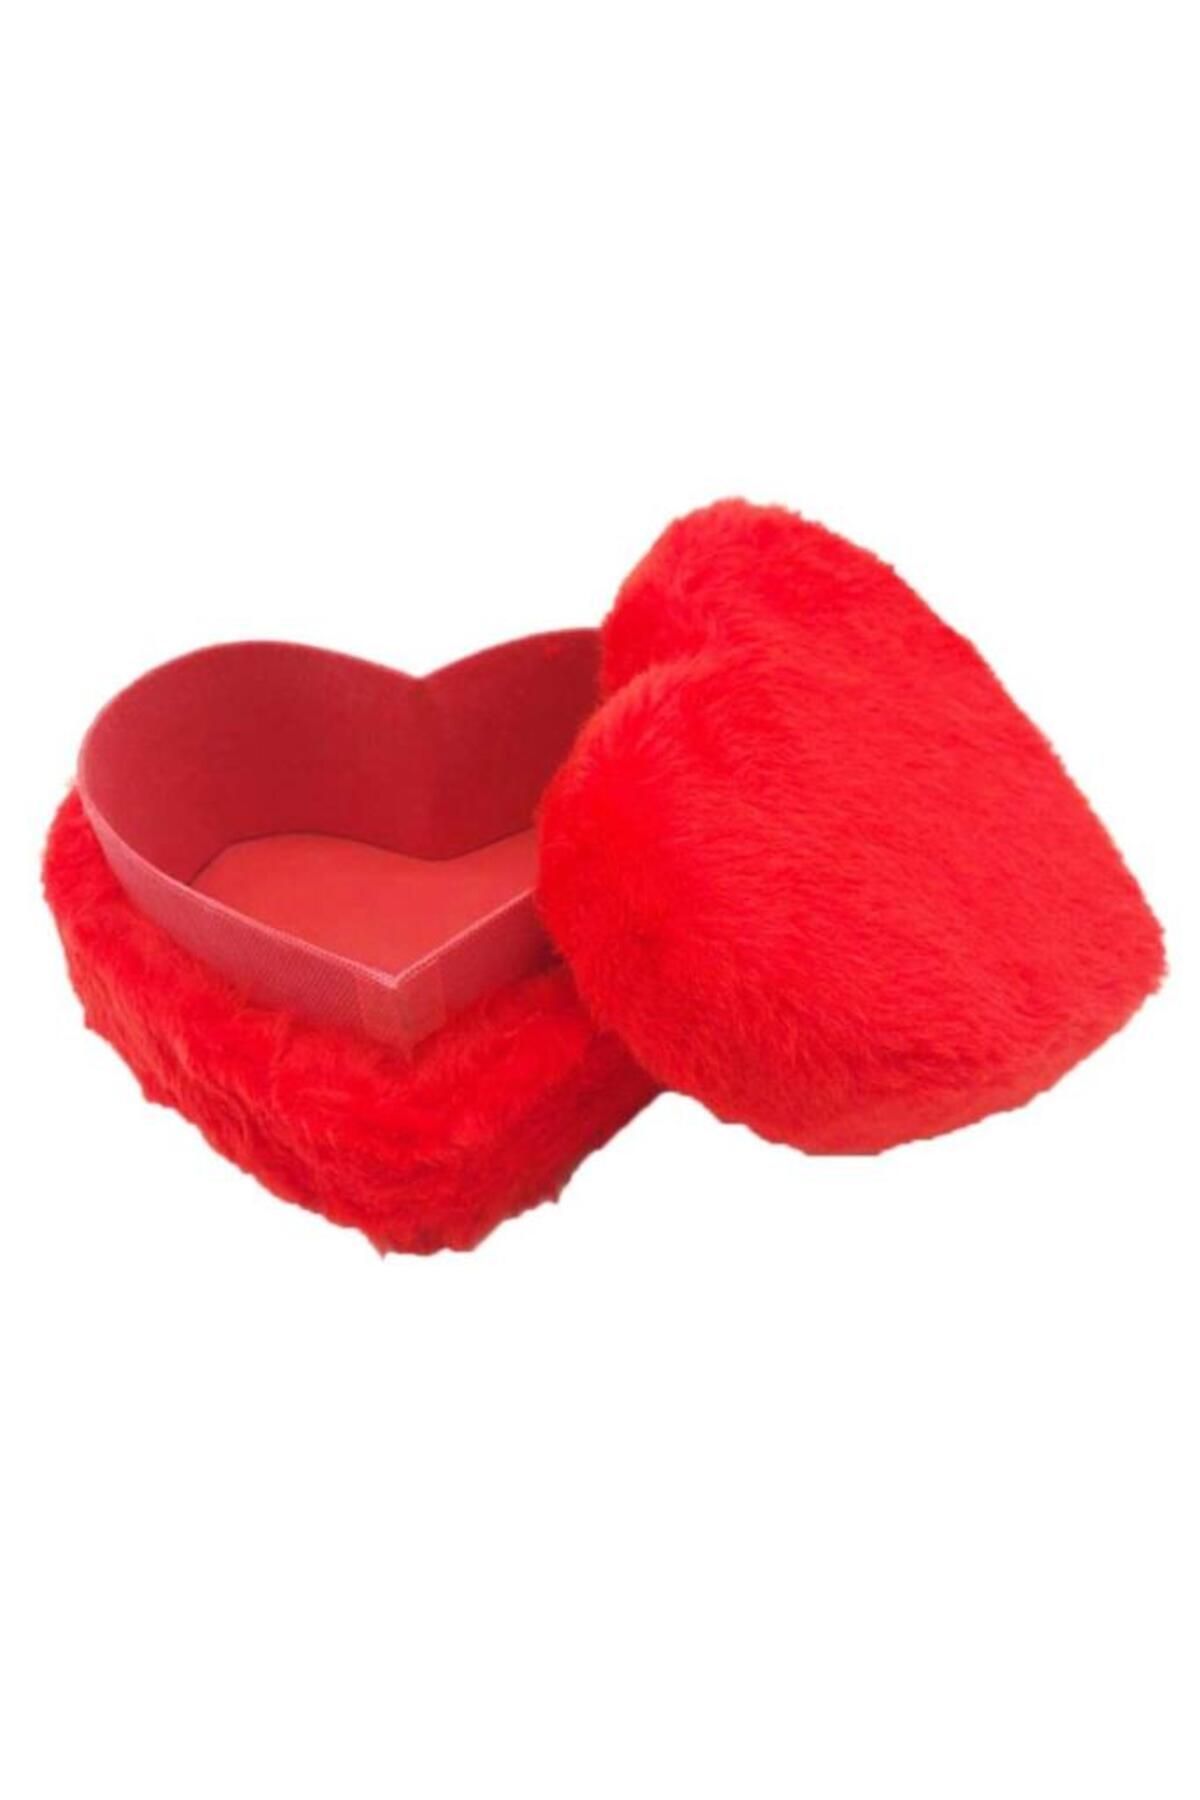 Lizpo Decor Kalpli Peluş Kutu Kırmızı Sevgililer Günü